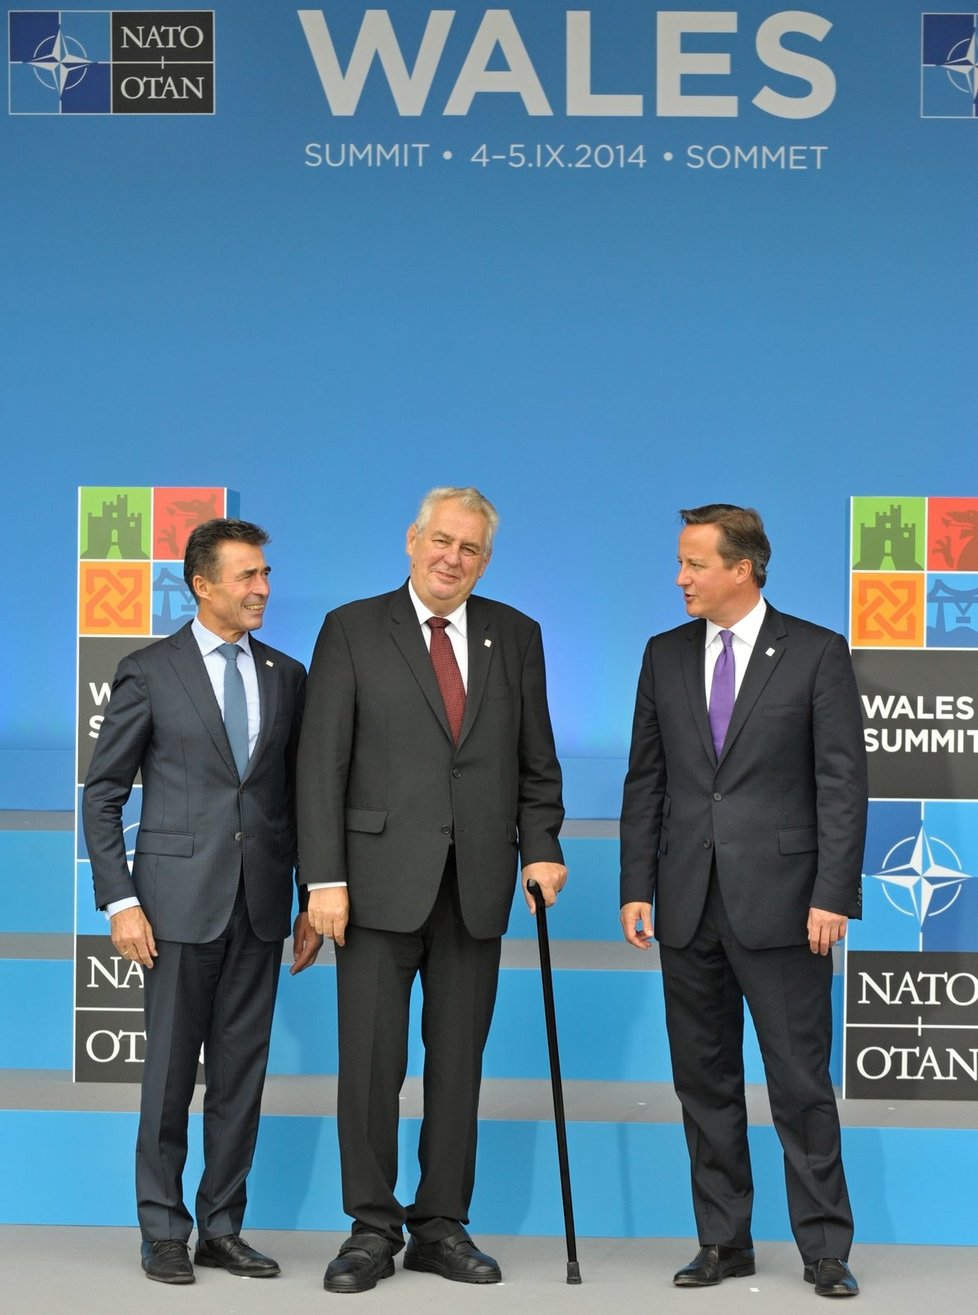 Dvoudenní Summit NATO, který končí dnes, soustředil vrcholné světové i evropské politiky včetně amerického prezidenta Baracka Obamy, německé kancléřky Angely Merkelové a také české hlavy státu Miloše Zemana.